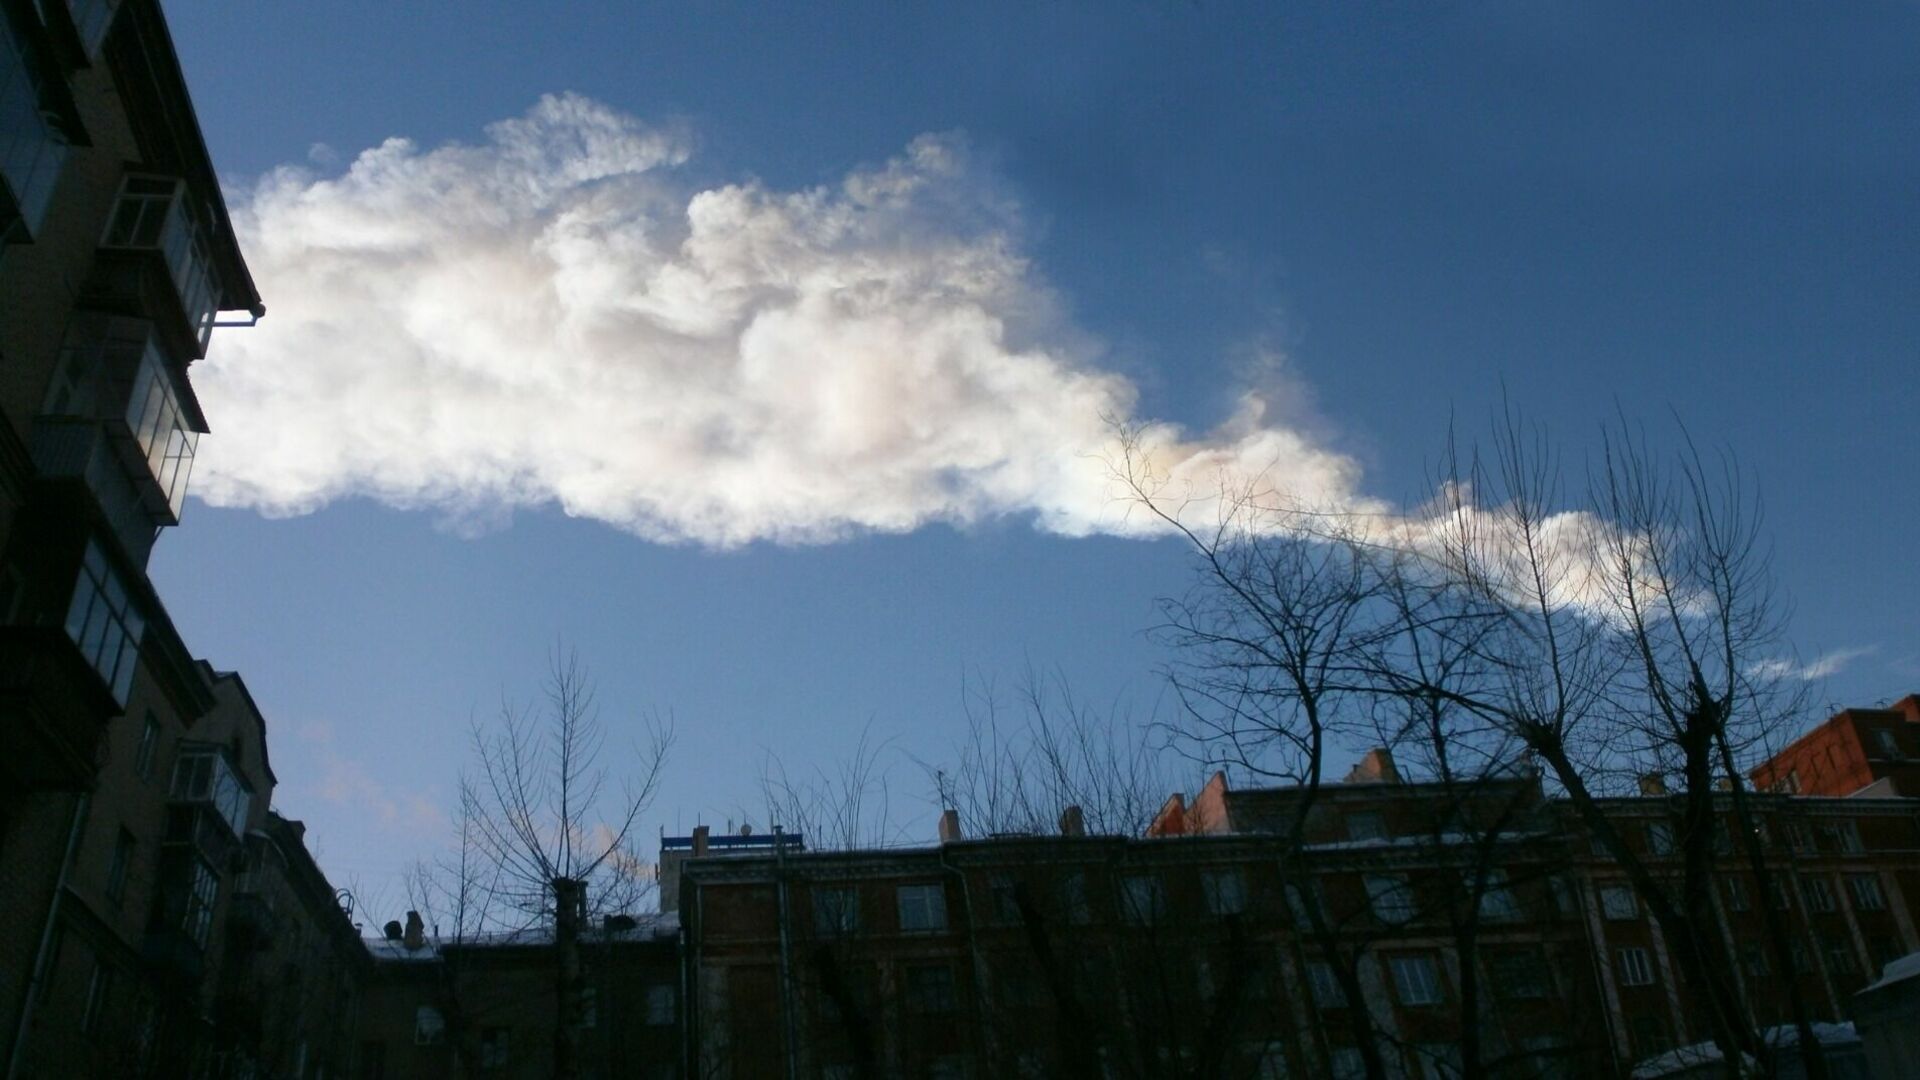 След в небе Челябинска от взрыва метеорита 15 февраля 2013 года